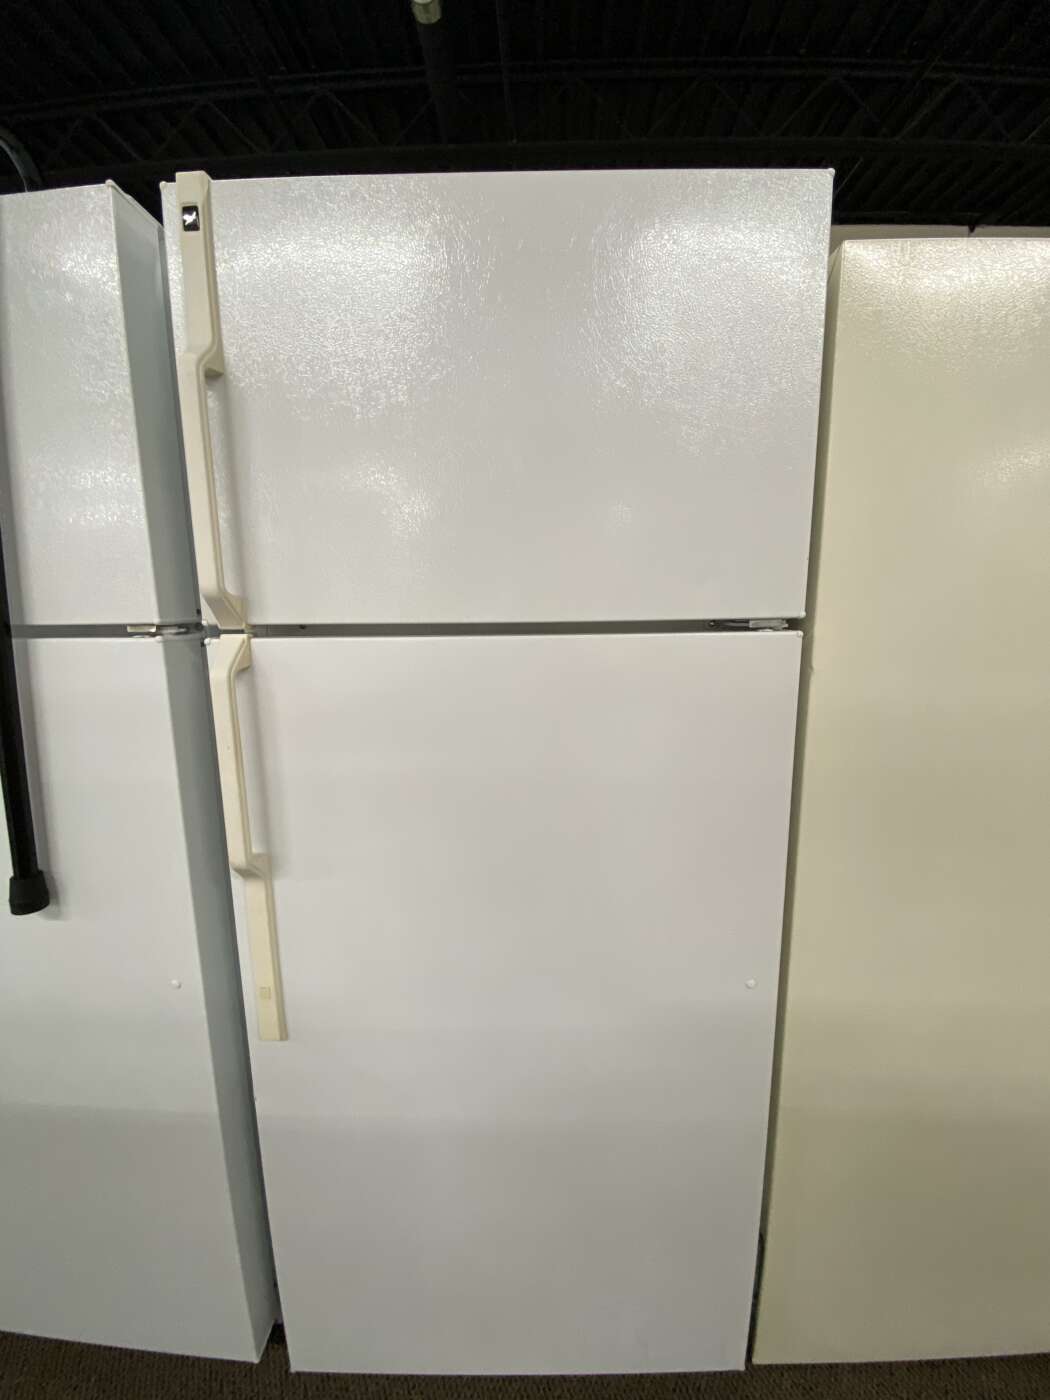 Reconditioned G/E 18 Cu. Ft. Top-Freezer Refrigerator – White